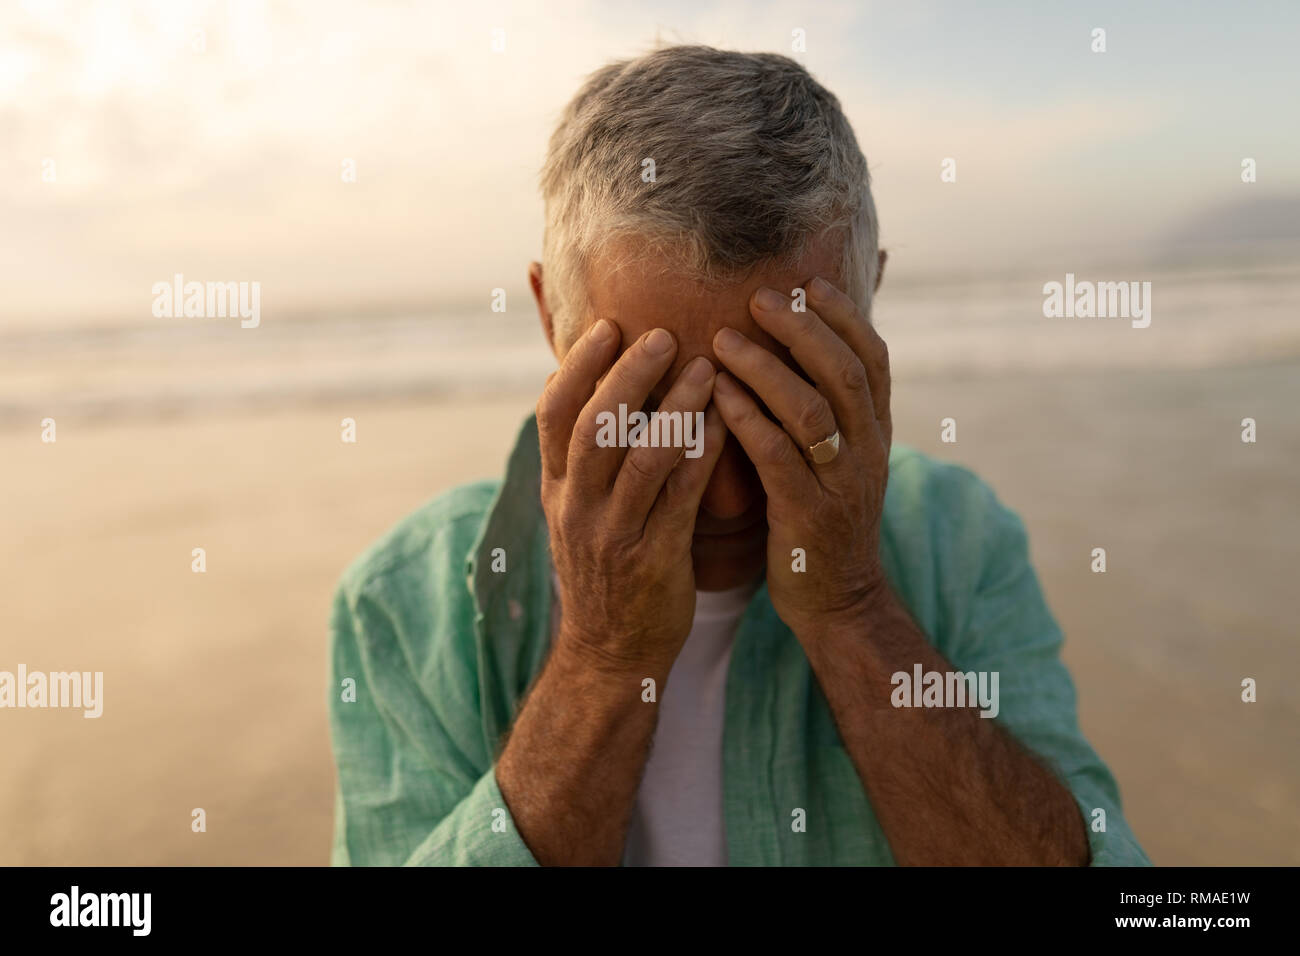 Man couvrant son visage en étant debout sur la plage Banque D'Images